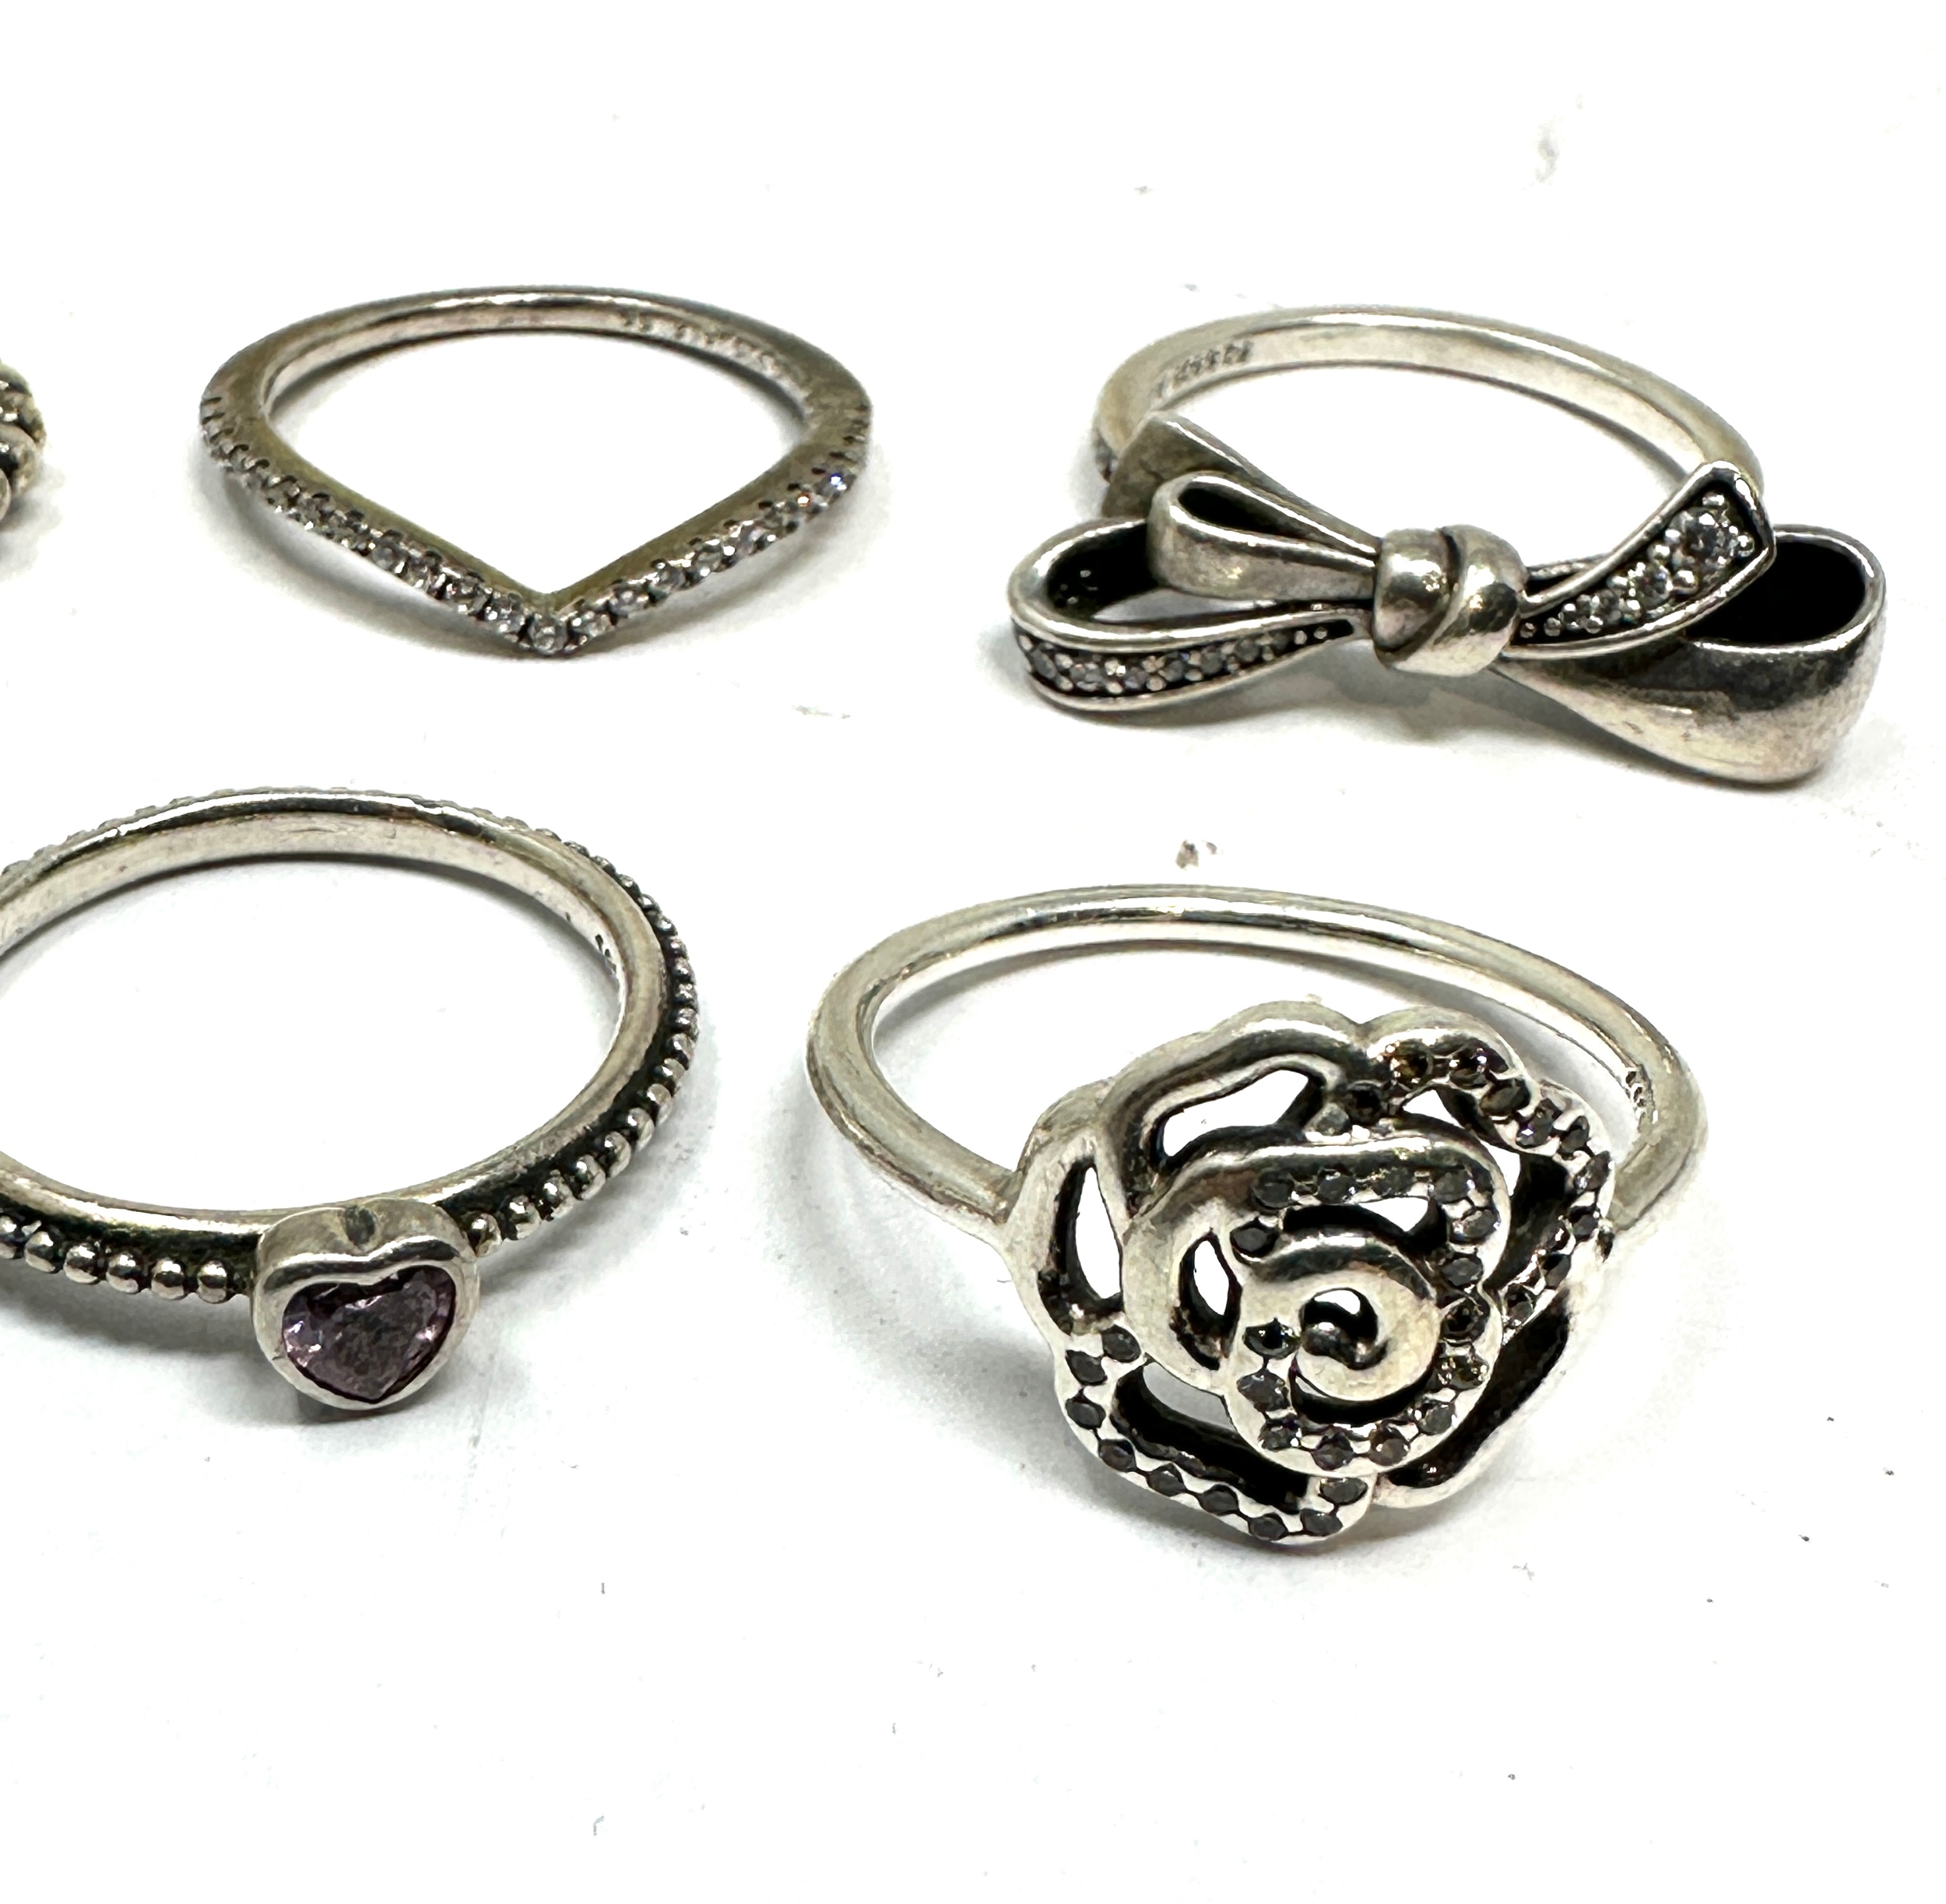 6 silver pandora rings - Image 3 of 3